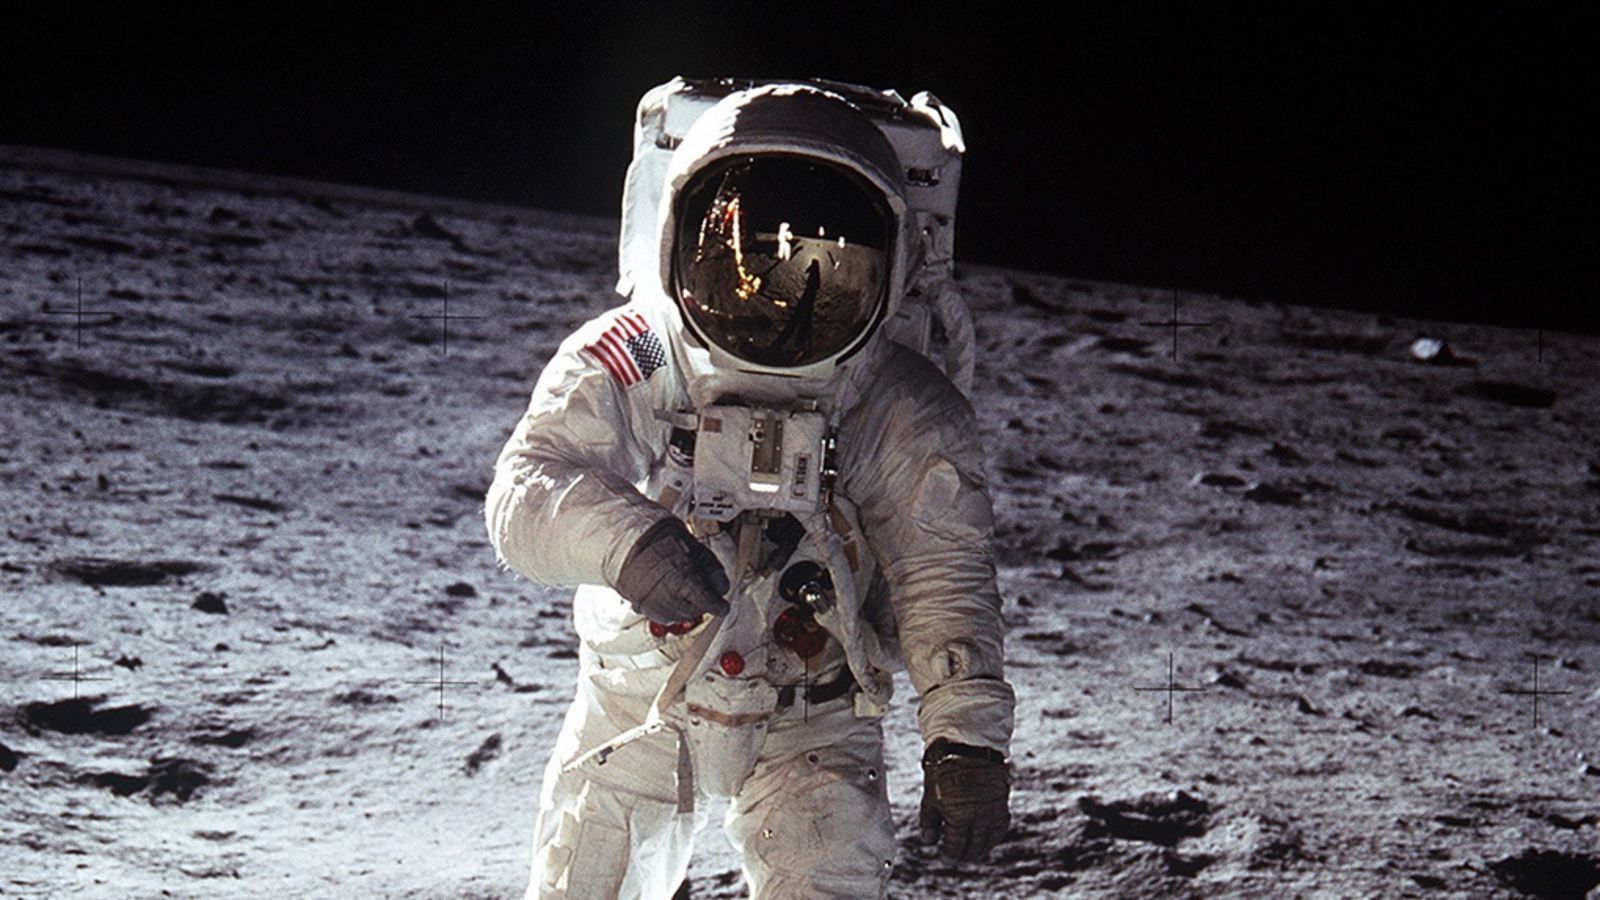 Salen a la luz imágenes inéditas de la misión espacial del Apollo 11 a la Luna